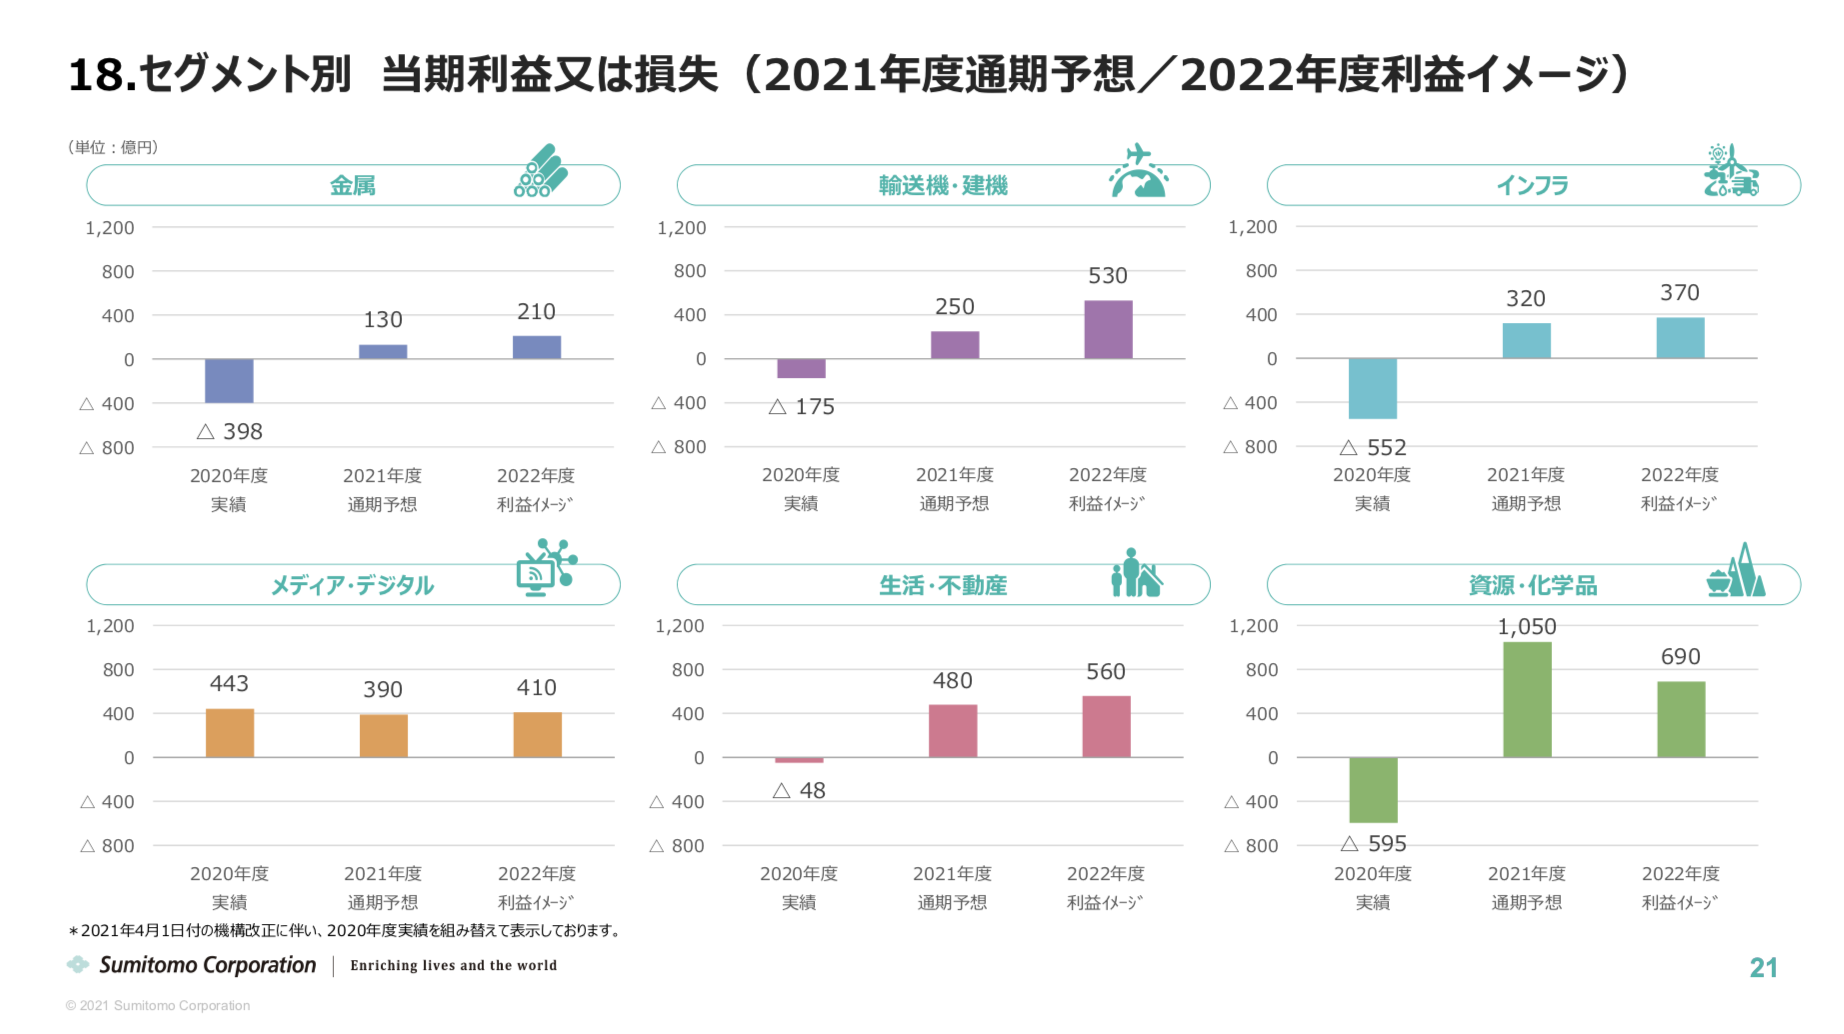 住友商事　新中期経営計画(2021 年度~2023 年度)に関するお知らせ